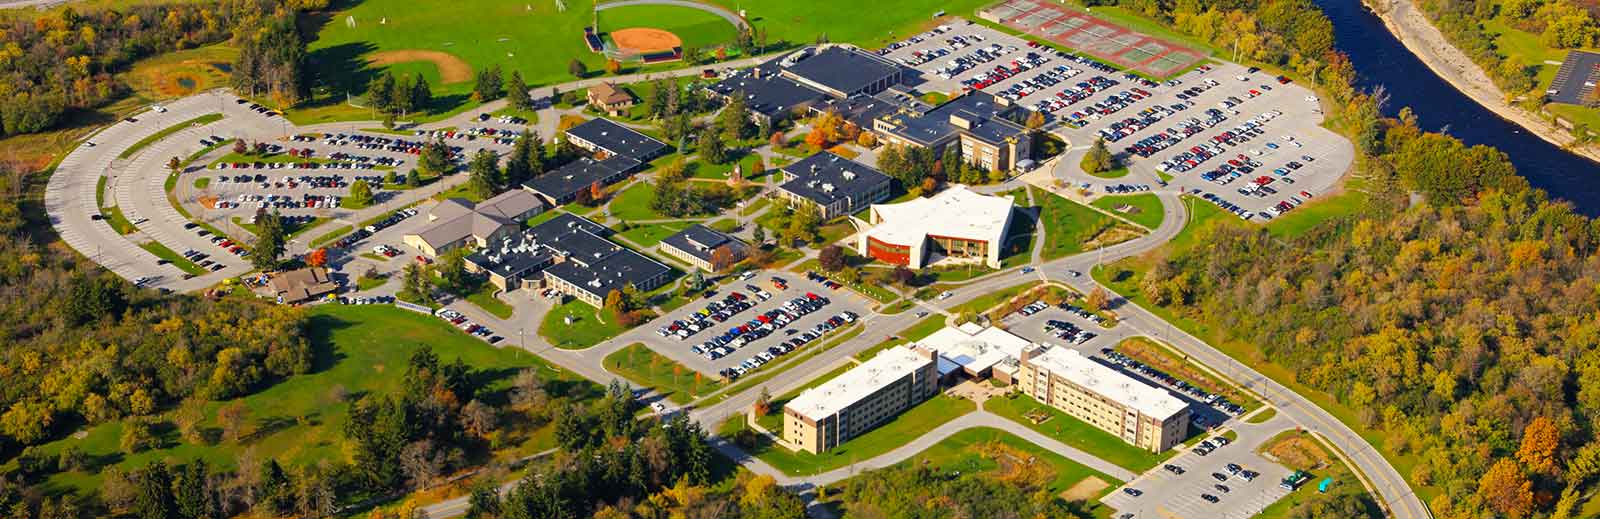 Aerial image of JCC campus